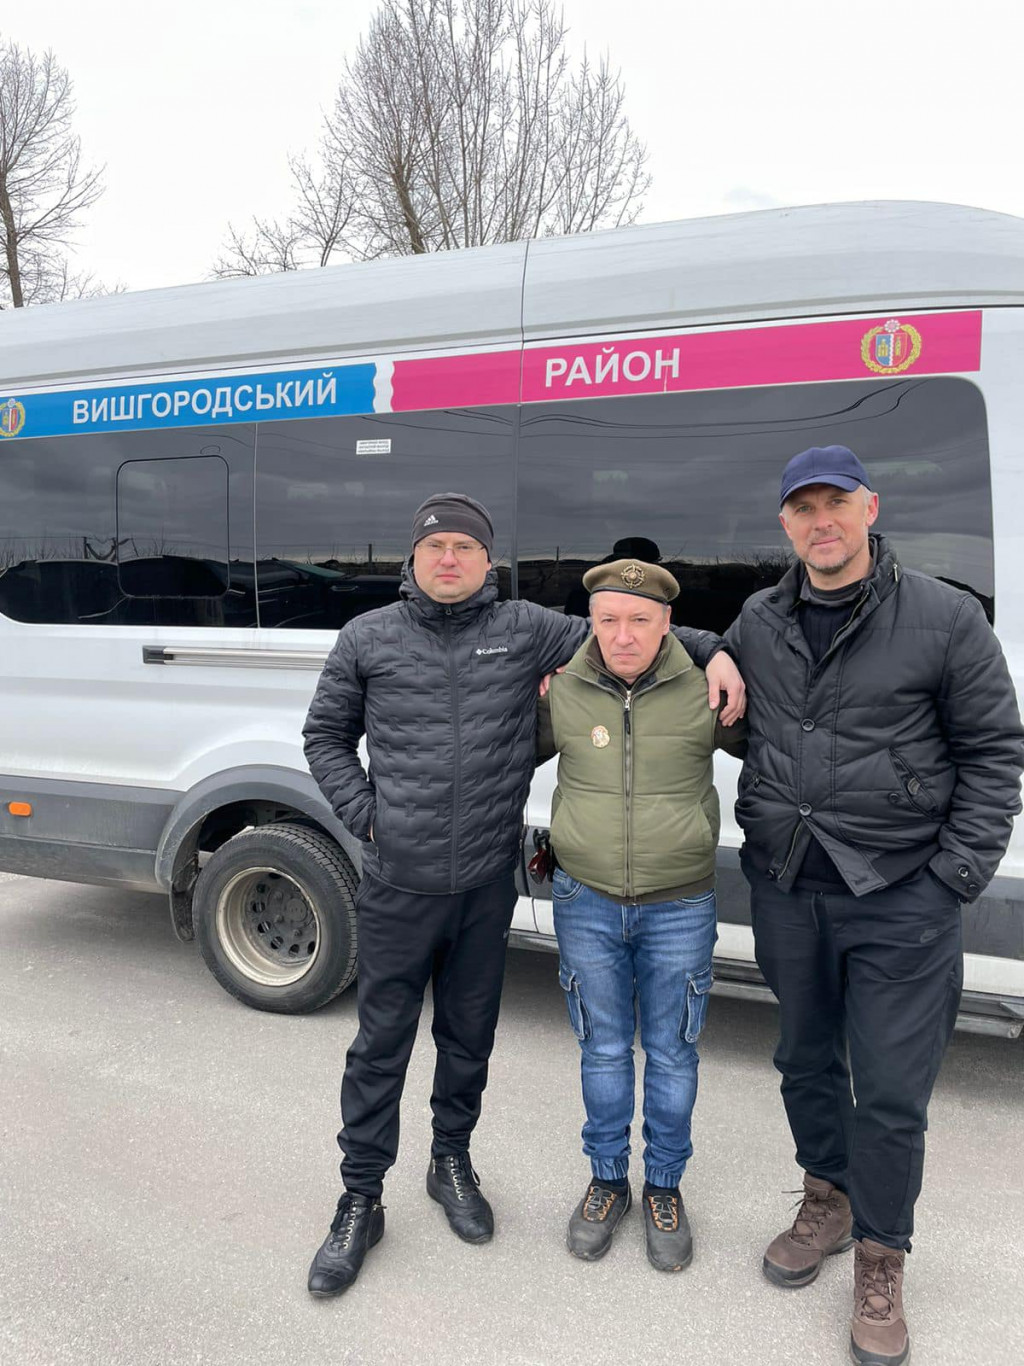 З контрольованих окупантами територій Вишгородського району вдалося евакуювати другу групу людей